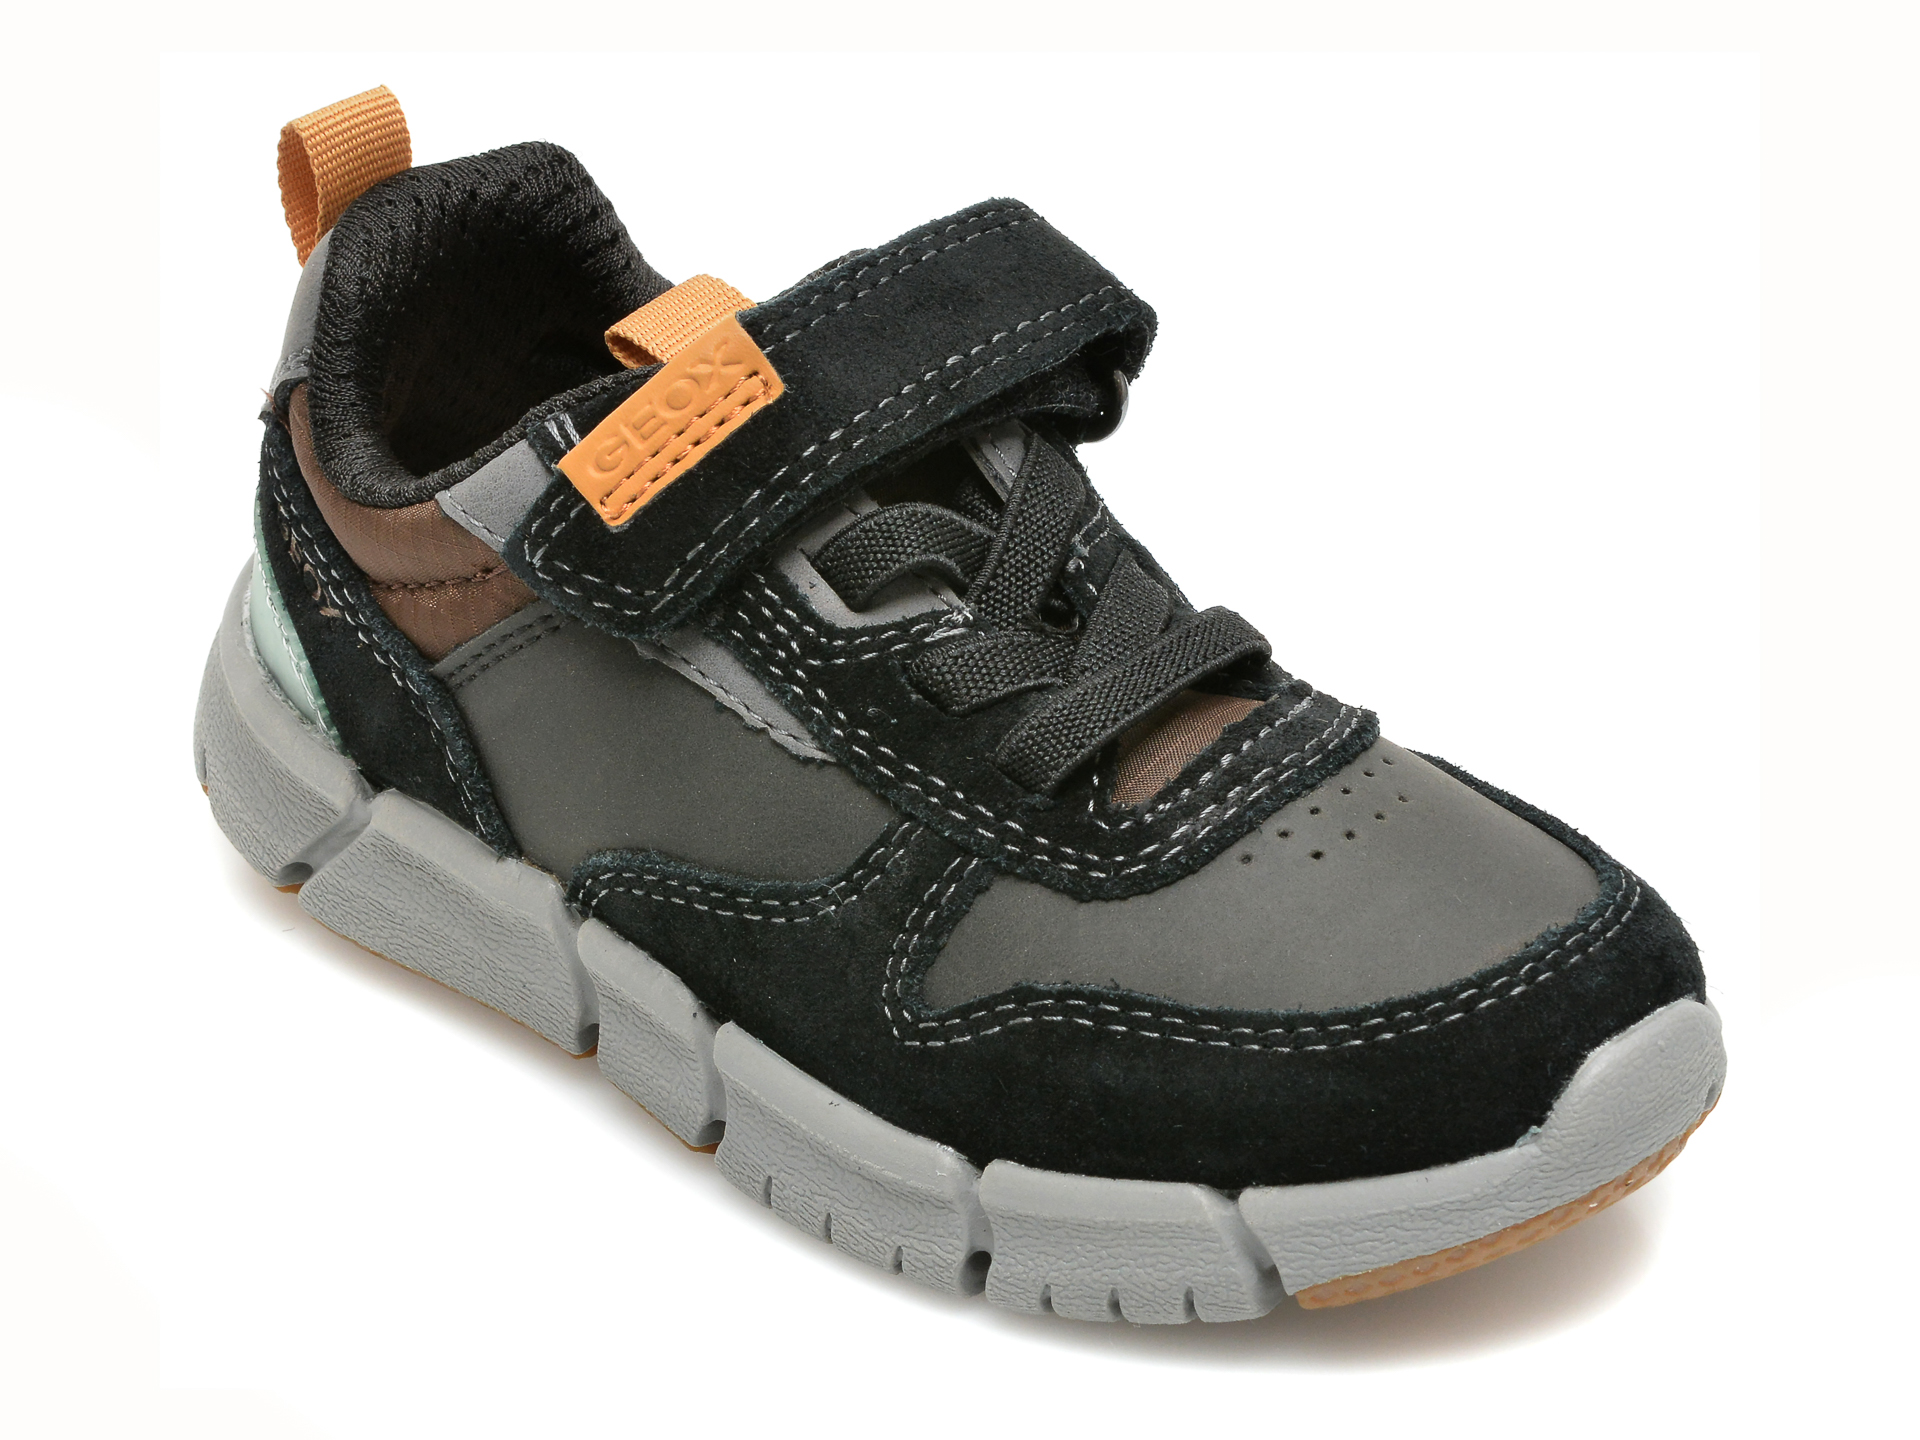 Pantofi sport GEOX negri, J169BC, din piele naturala Geox Geox